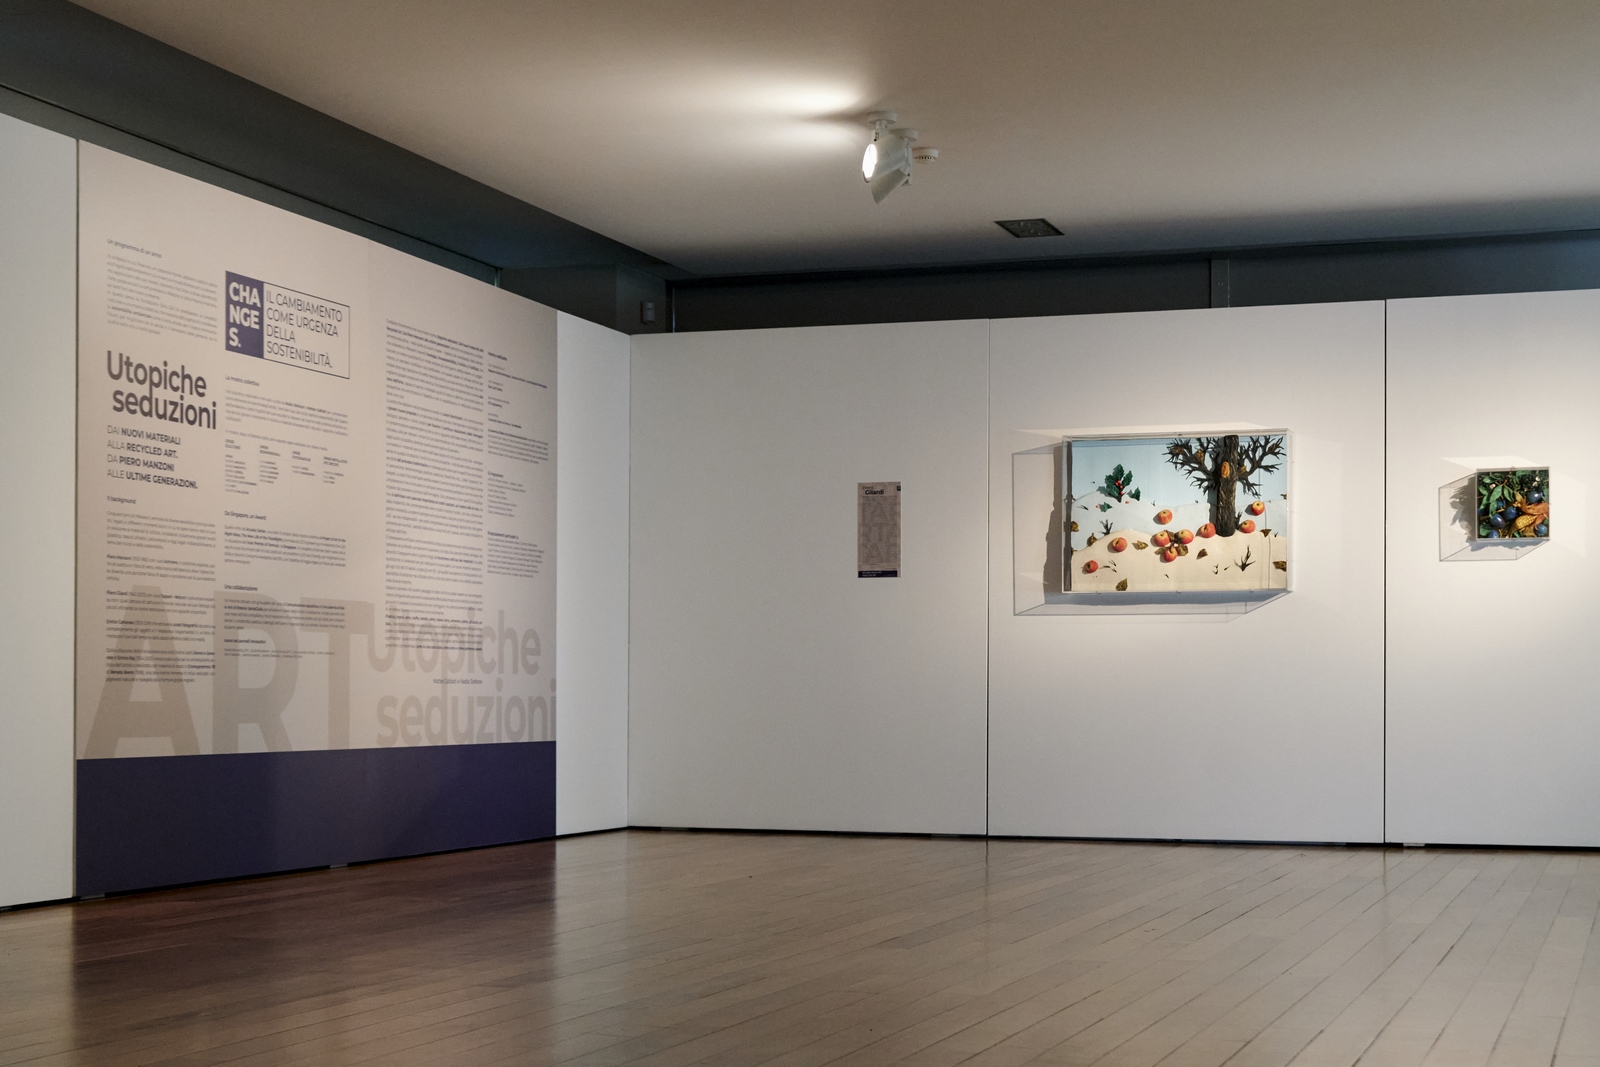 Veduta della mostra Utopiche seduzioni, Fondazione Dino Zoli, Forlì, 2023. Ph. Resina